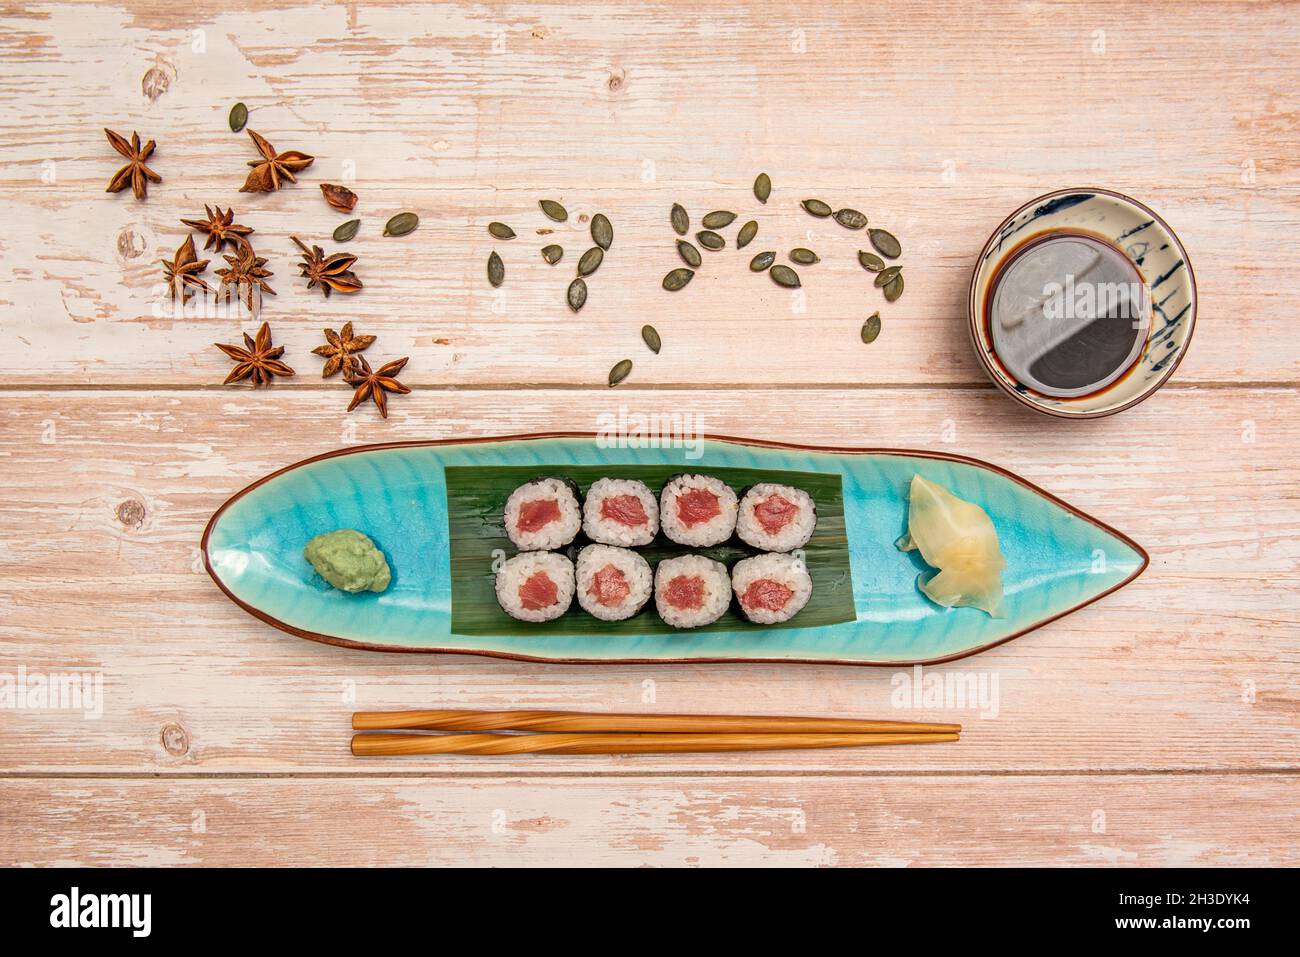 Service de maki de saumon rouge japonais roulé avec du riz et de l'algue nori présenté sur un plateau bleu avec des baguettes en bois, l'anis étoilé, les graines de citrouille et s Banque D'Images